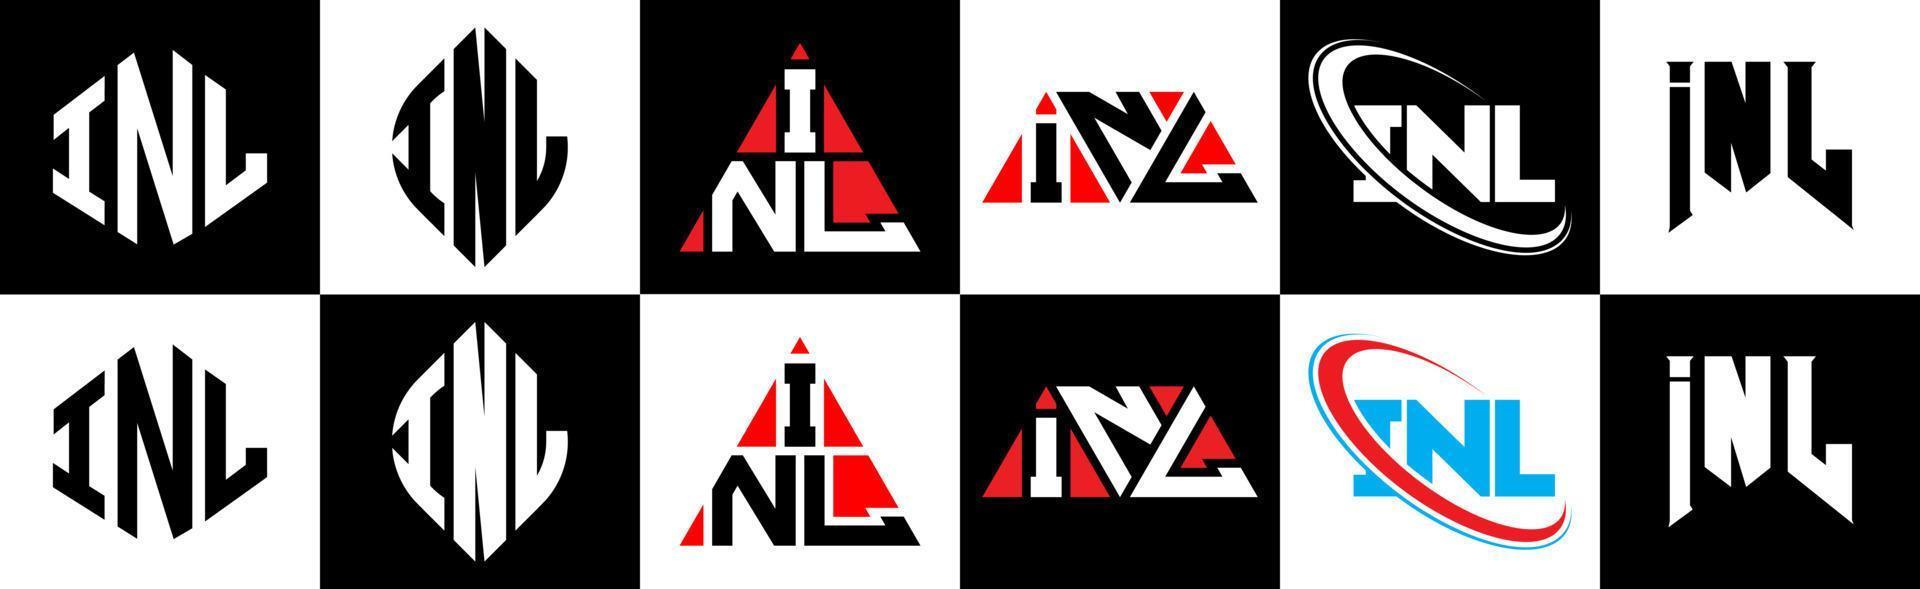 inl-Buchstaben-Logo-Design in sechs Stilen. Inl Polygon, Kreis, Dreieck, Sechseck, flacher und einfacher Stil mit schwarz-weißem Buchstabenlogo in einer Zeichenfläche. inl minimalistisches und klassisches Logo vektor